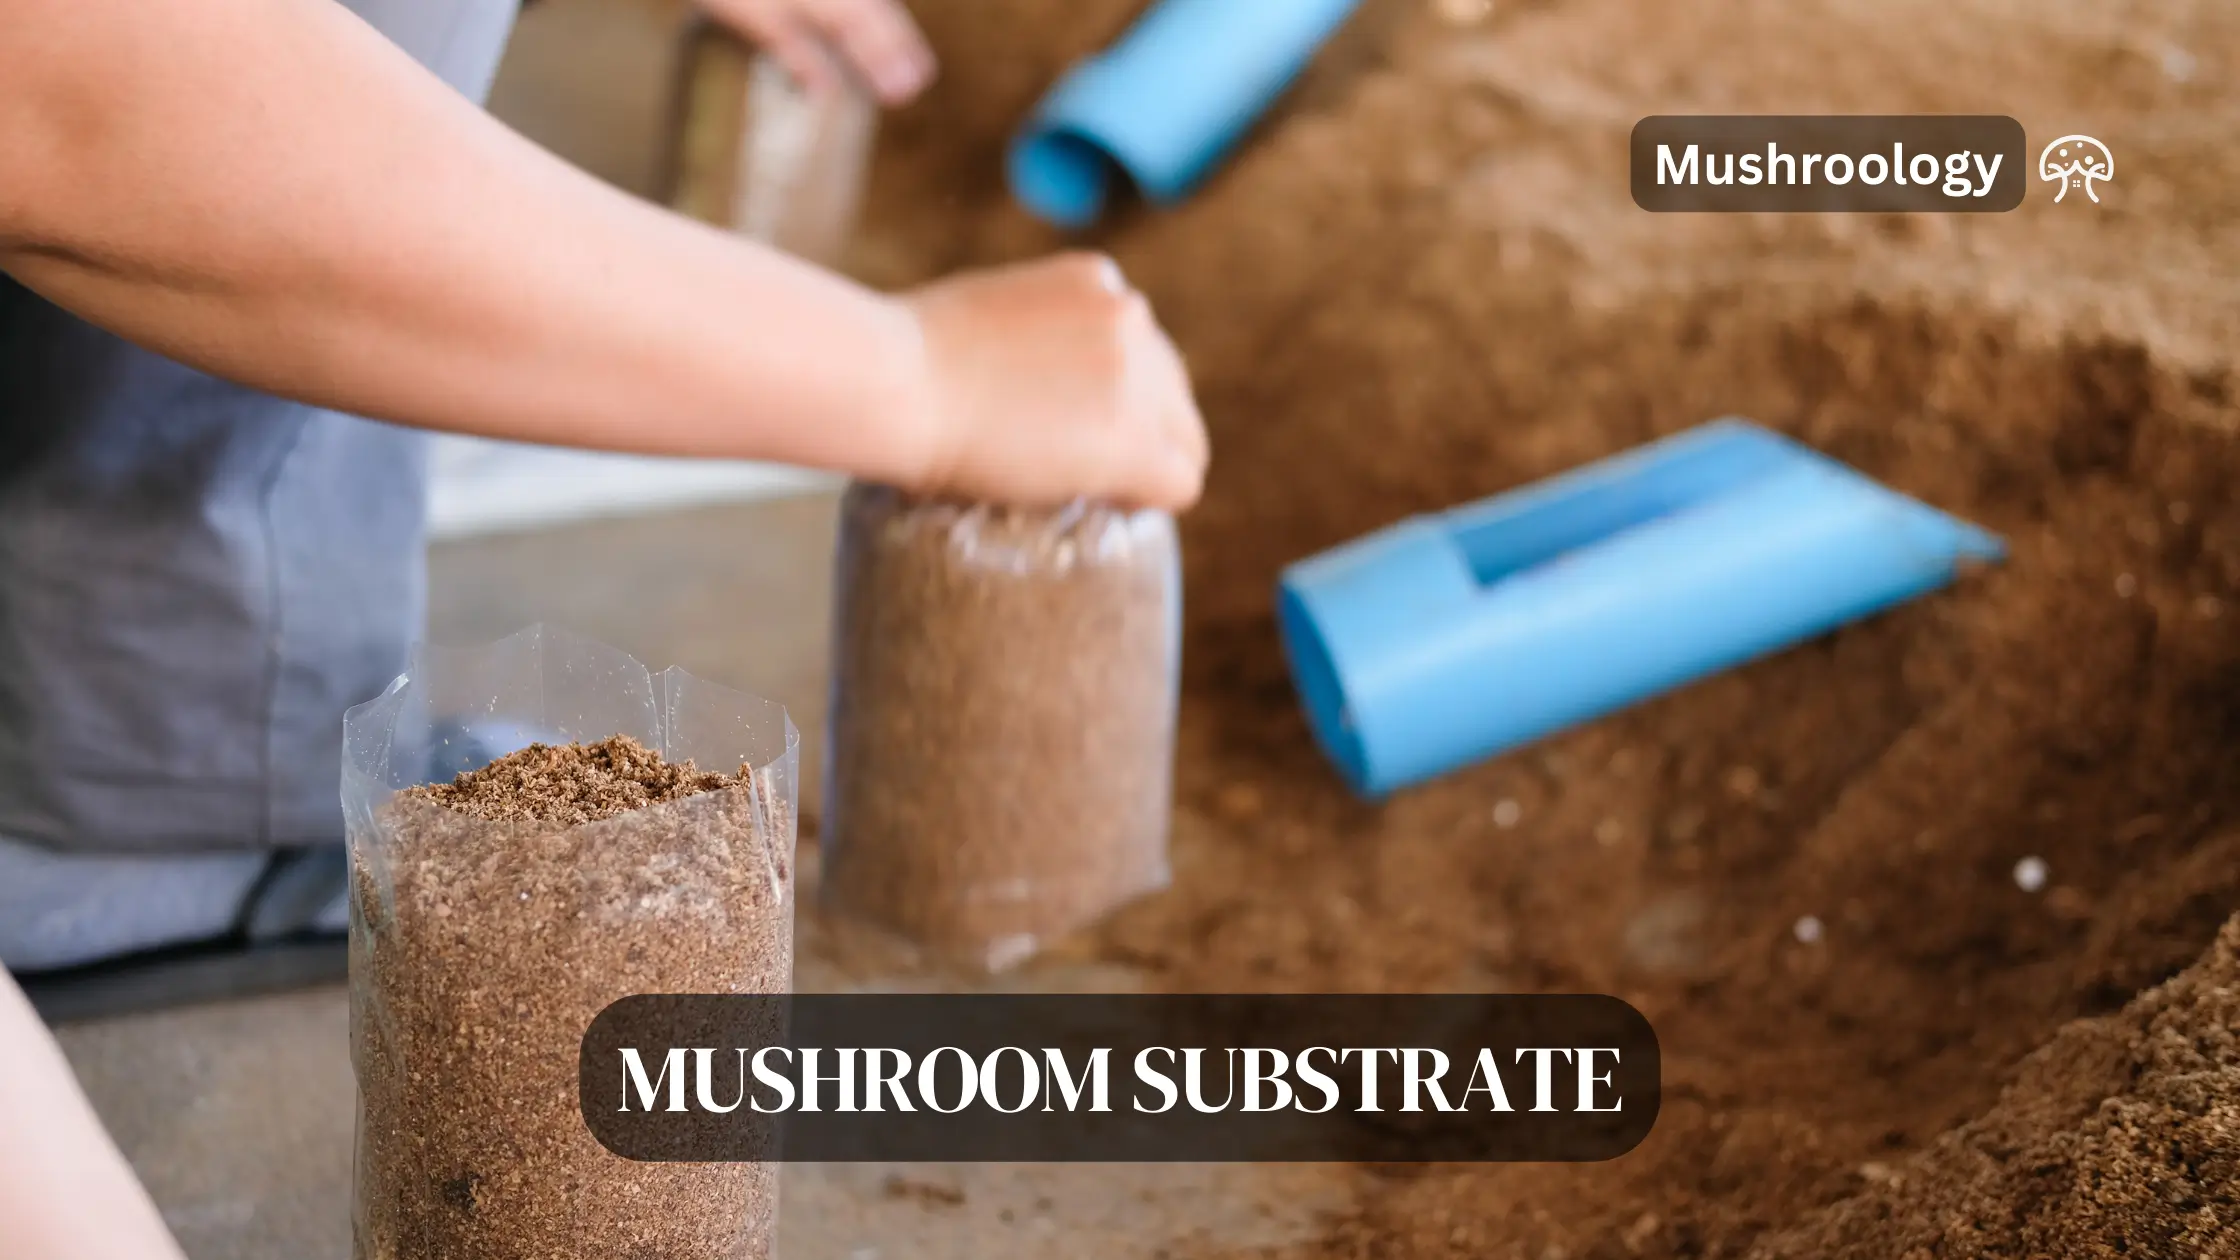 Mushroom substrate